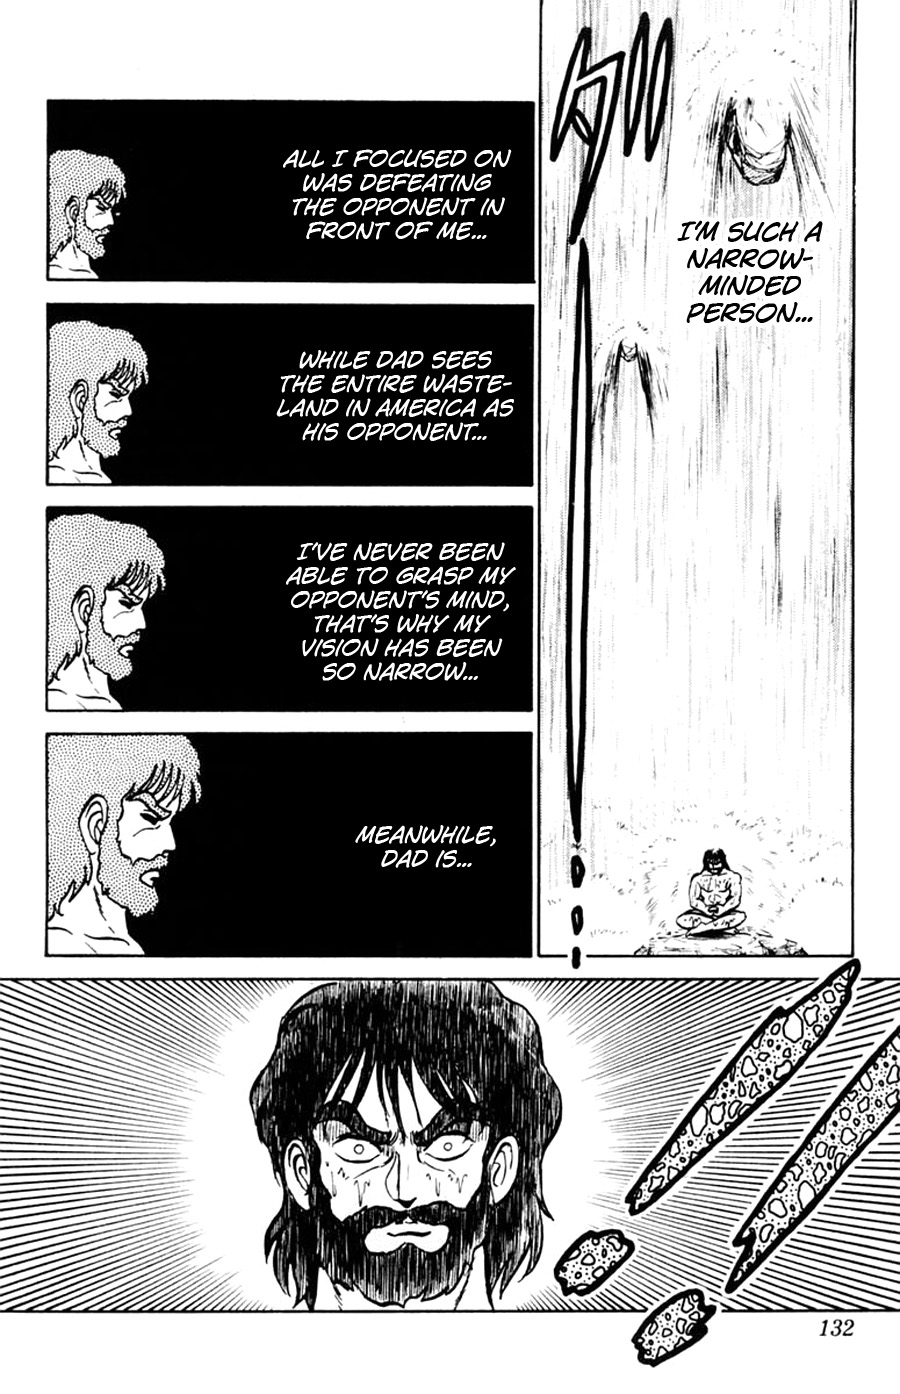 Yuu & Mii Vol. 8 Ch. 47 Michio Kouji's Story (Part 1)